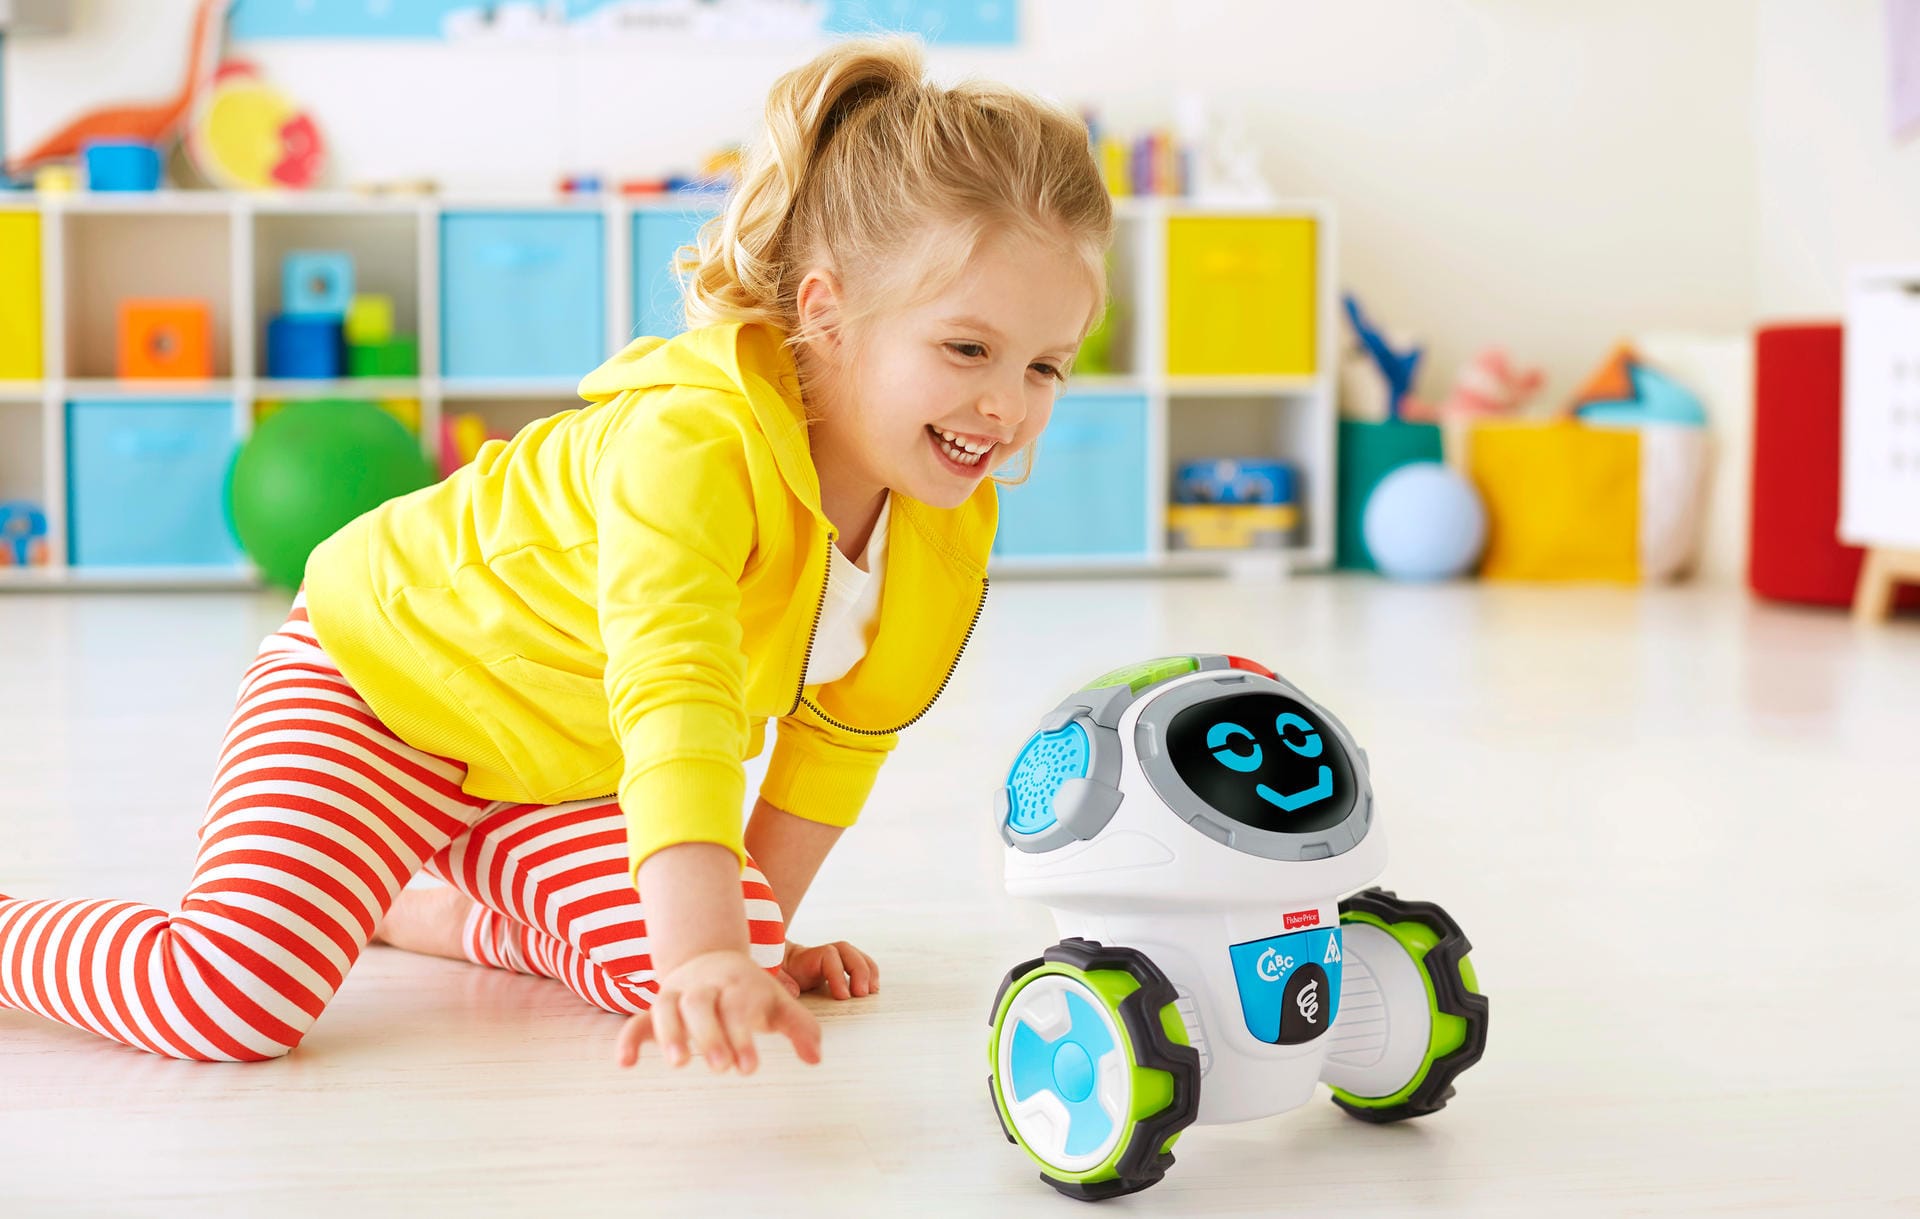 Lernroboter Movi: Dieser lustige interaktive Roboter ermuntert das Kind dazu, sich zu bewegen.